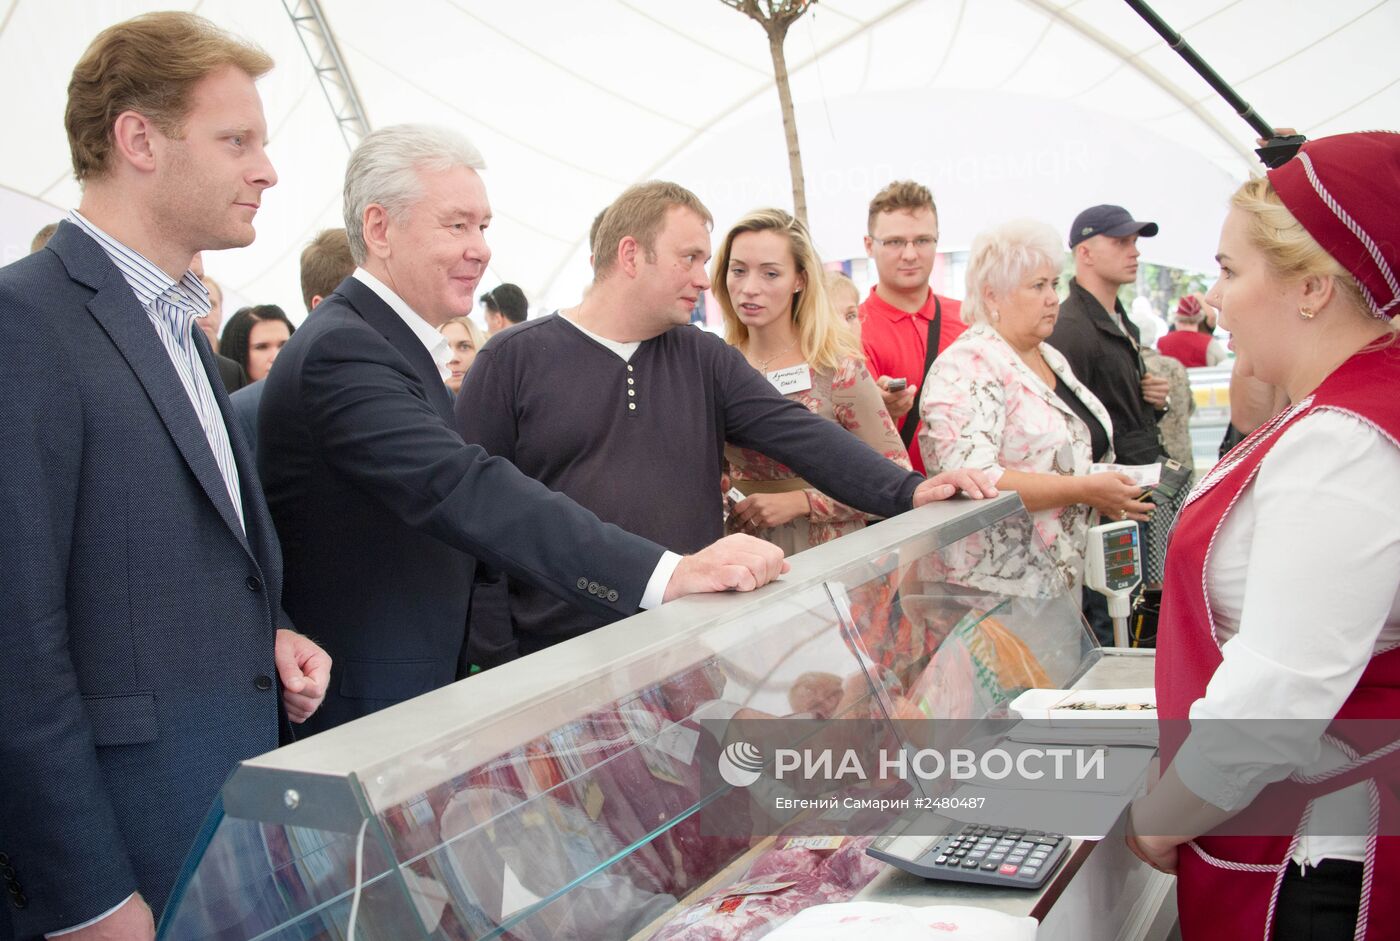 Мэр Москвы Сергей Собянин посетил гастрономический фестиваль "Региональные ярмарки"